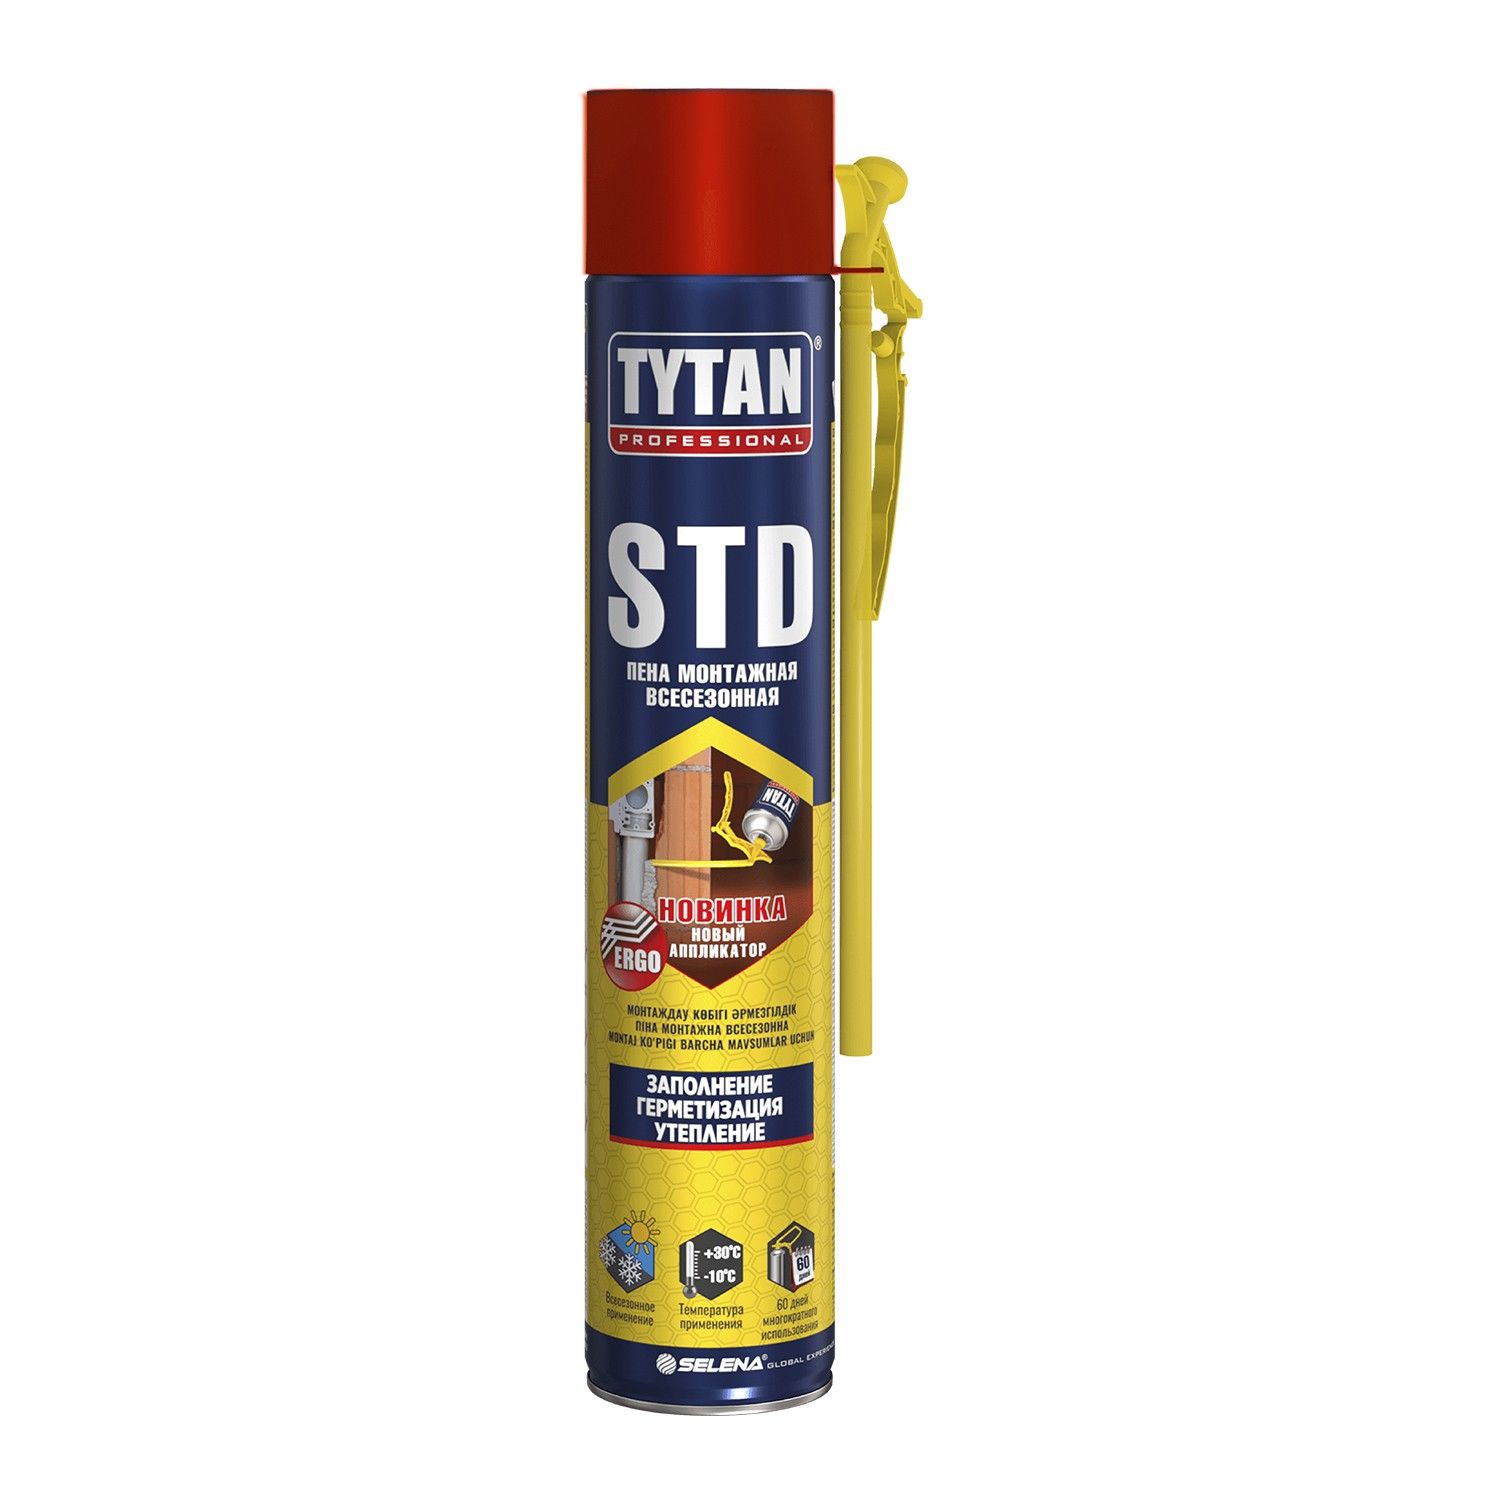 Пена монтажная бытовая TYTAN Professional STD всесезонная, 750 мл